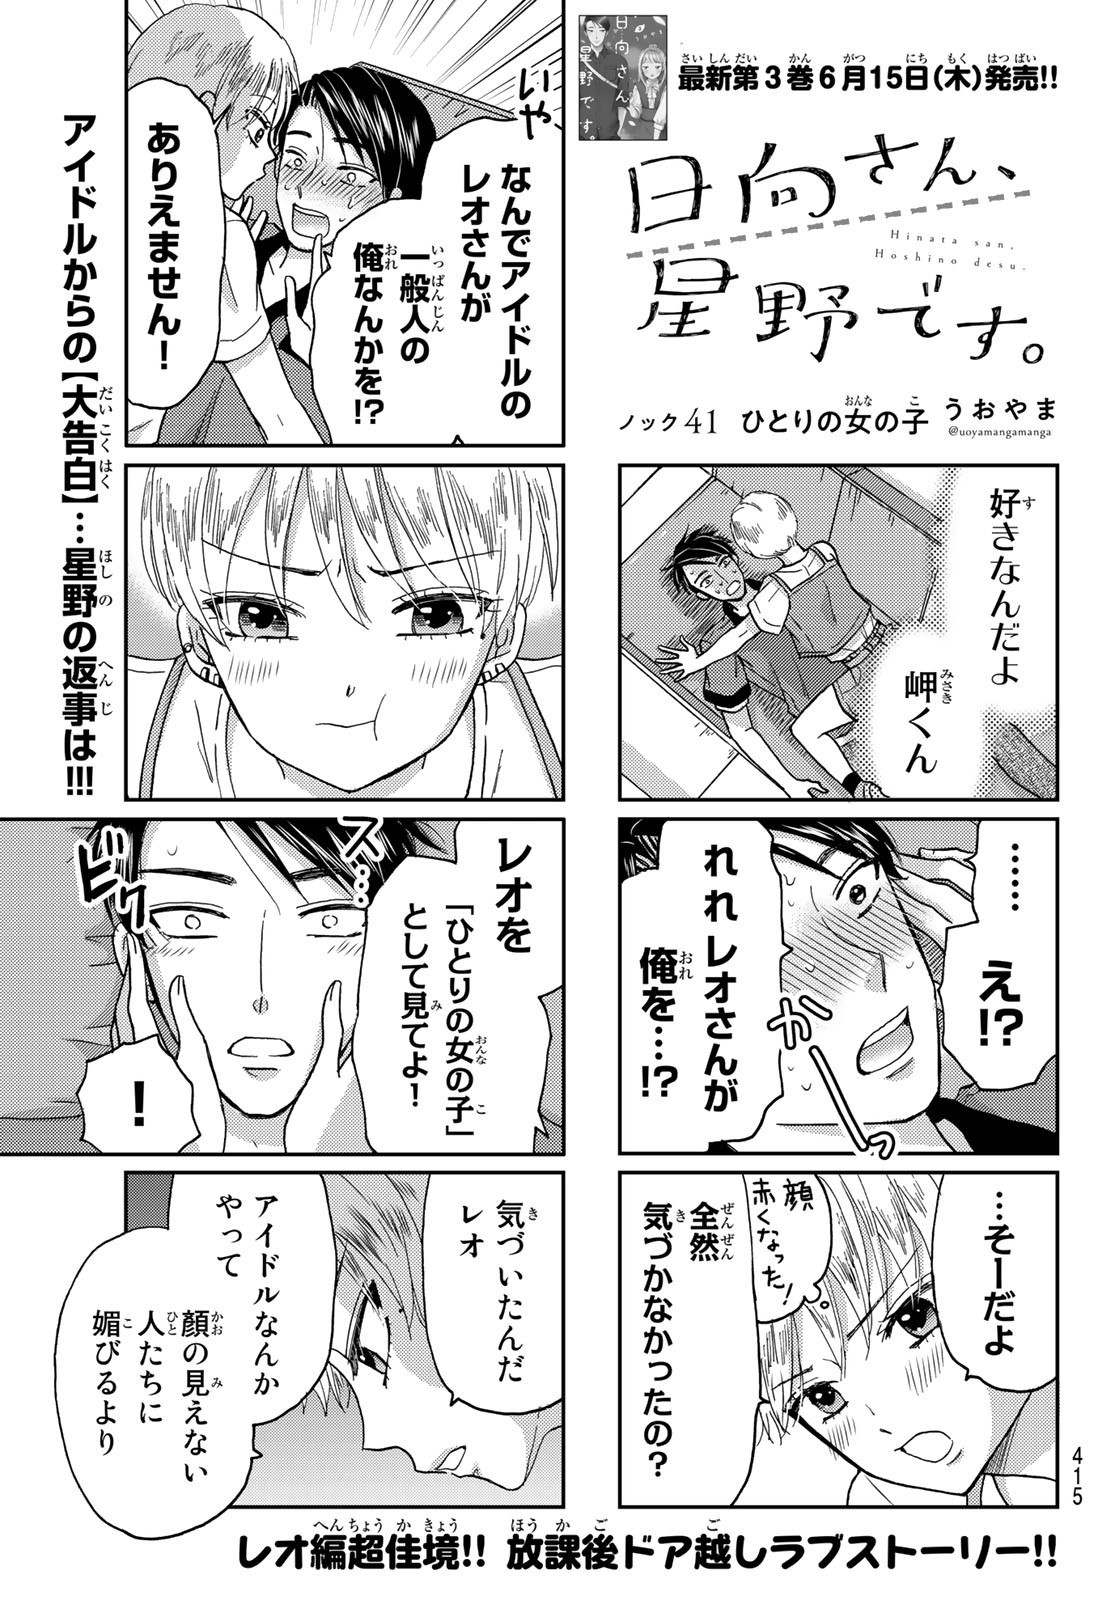 Hinata-san, Hoshino desu. - Chapter 041 - Page 1